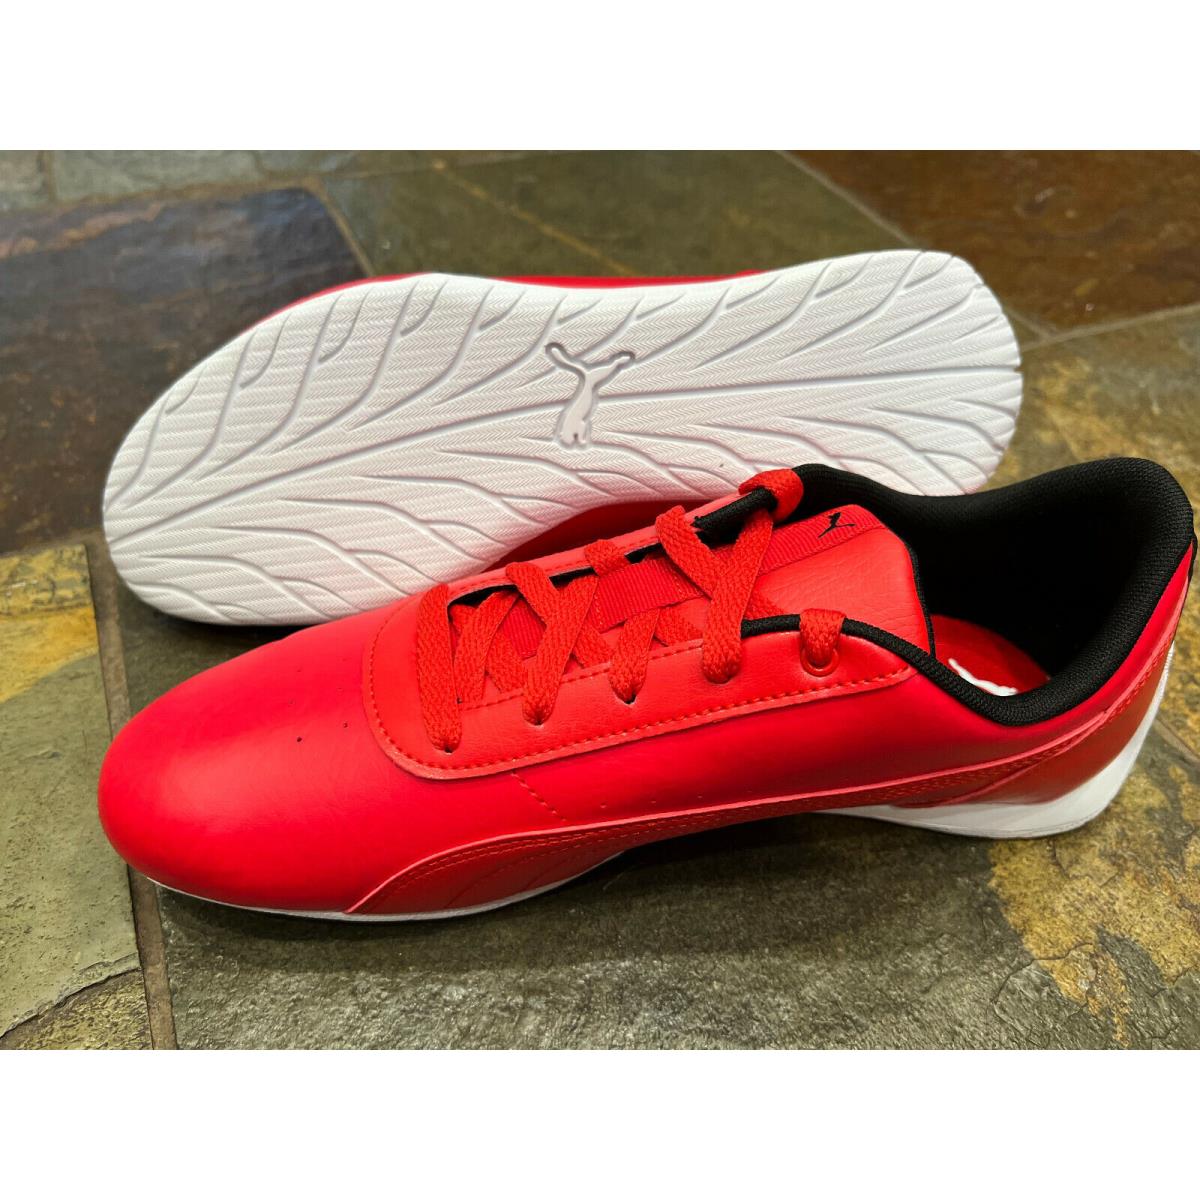 Puma shoes Auto - Red 2